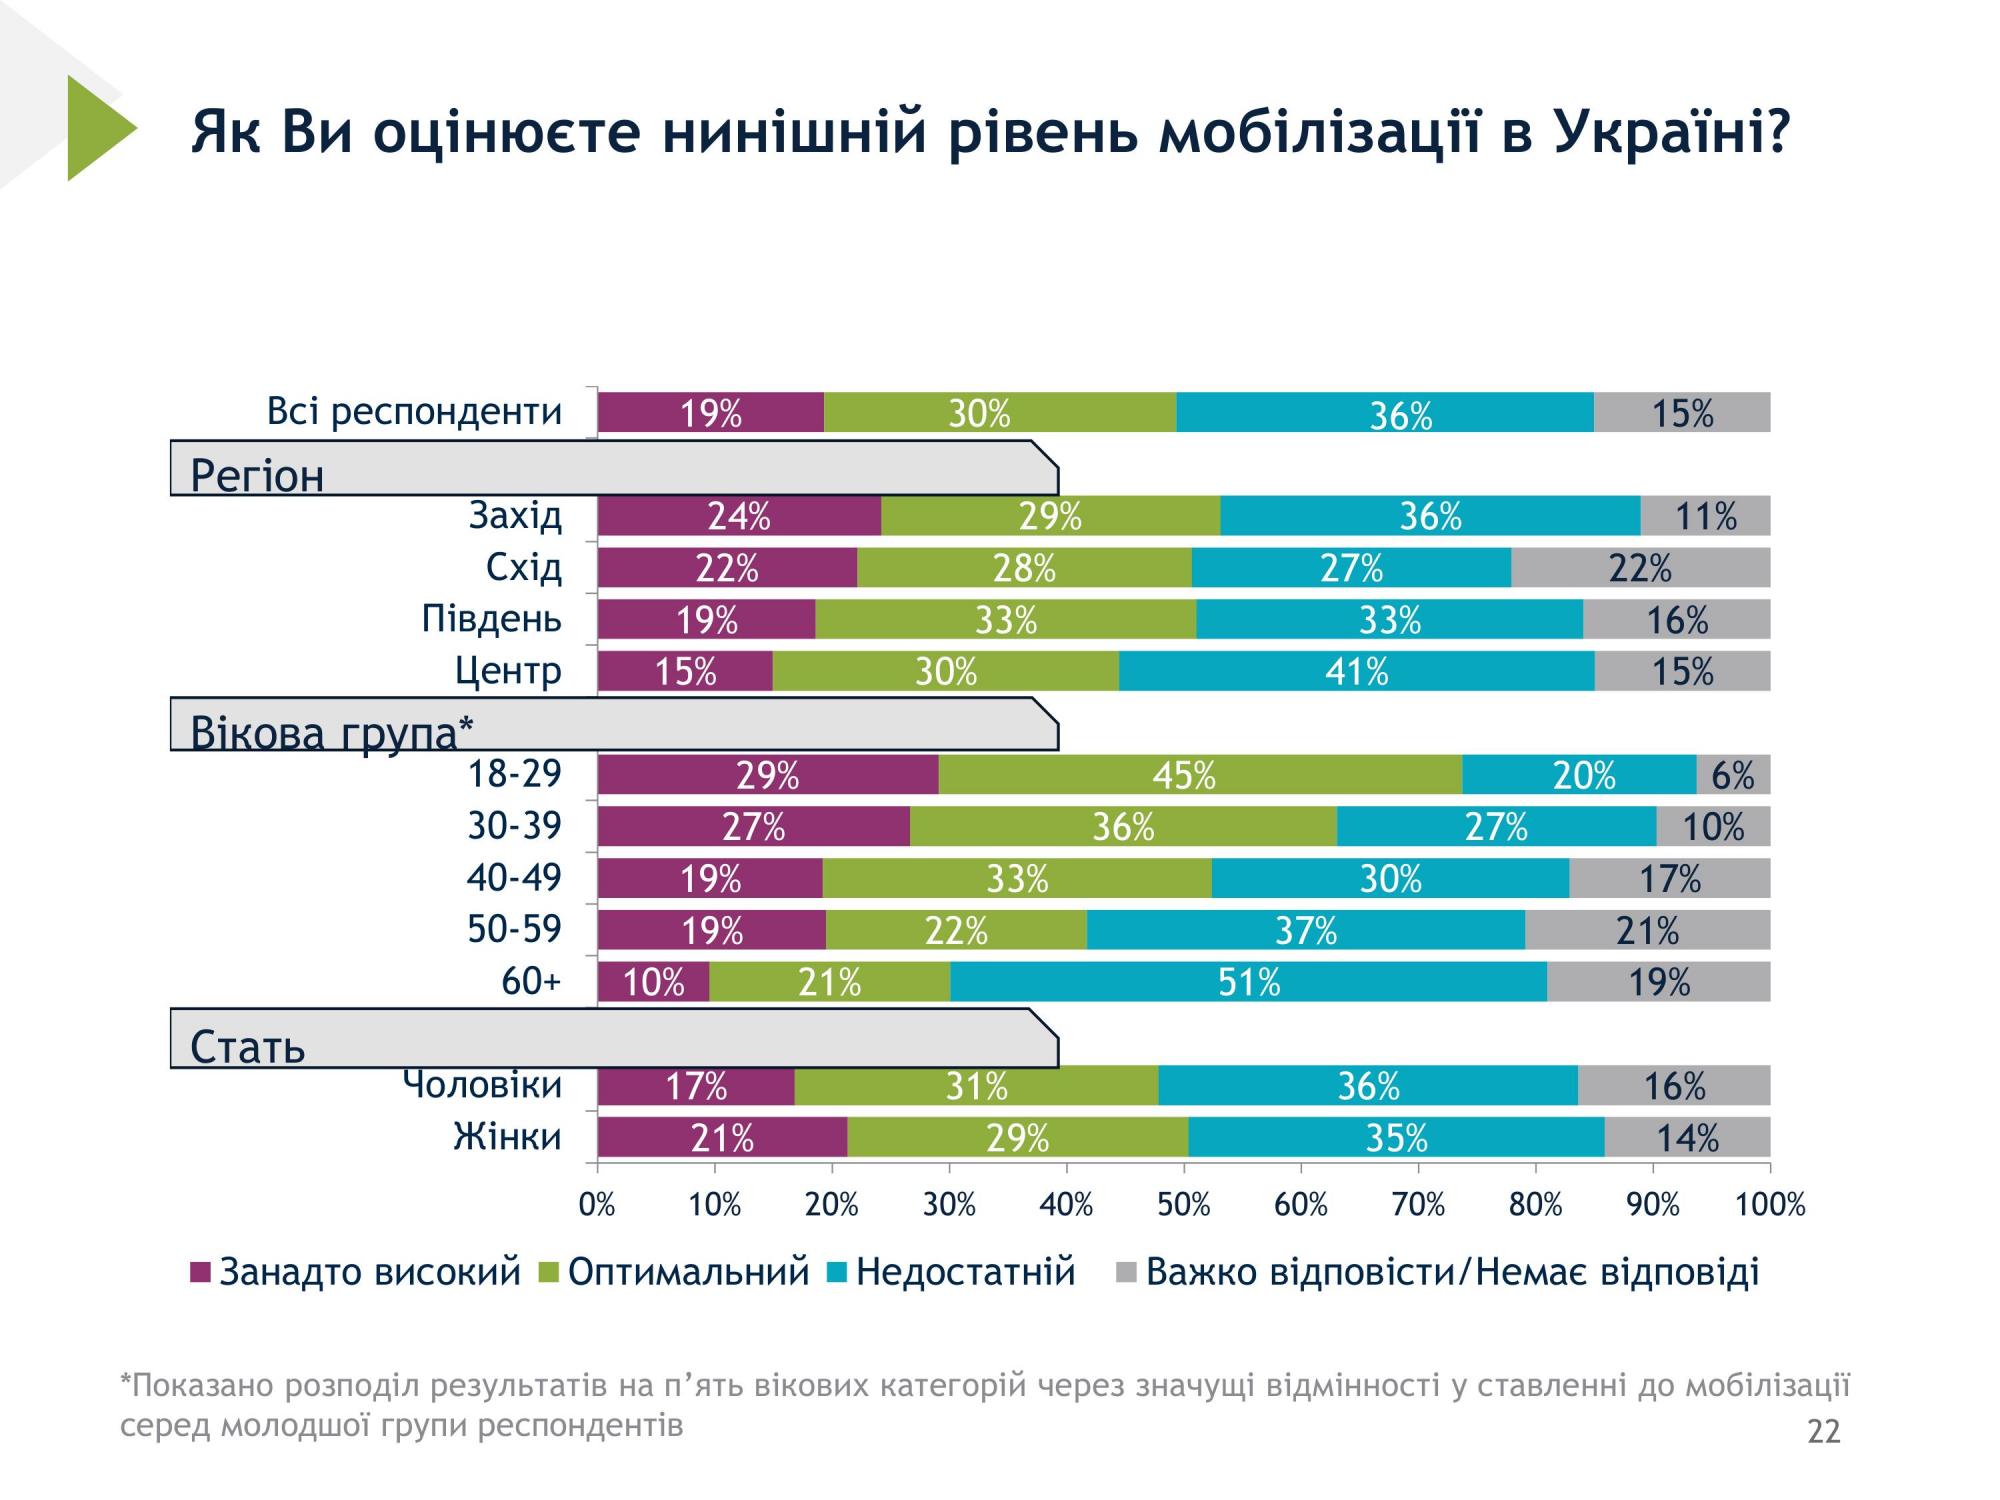 Слишком высокий, оптимальный или недостаточный: украинцы оценили уровень мобилизации